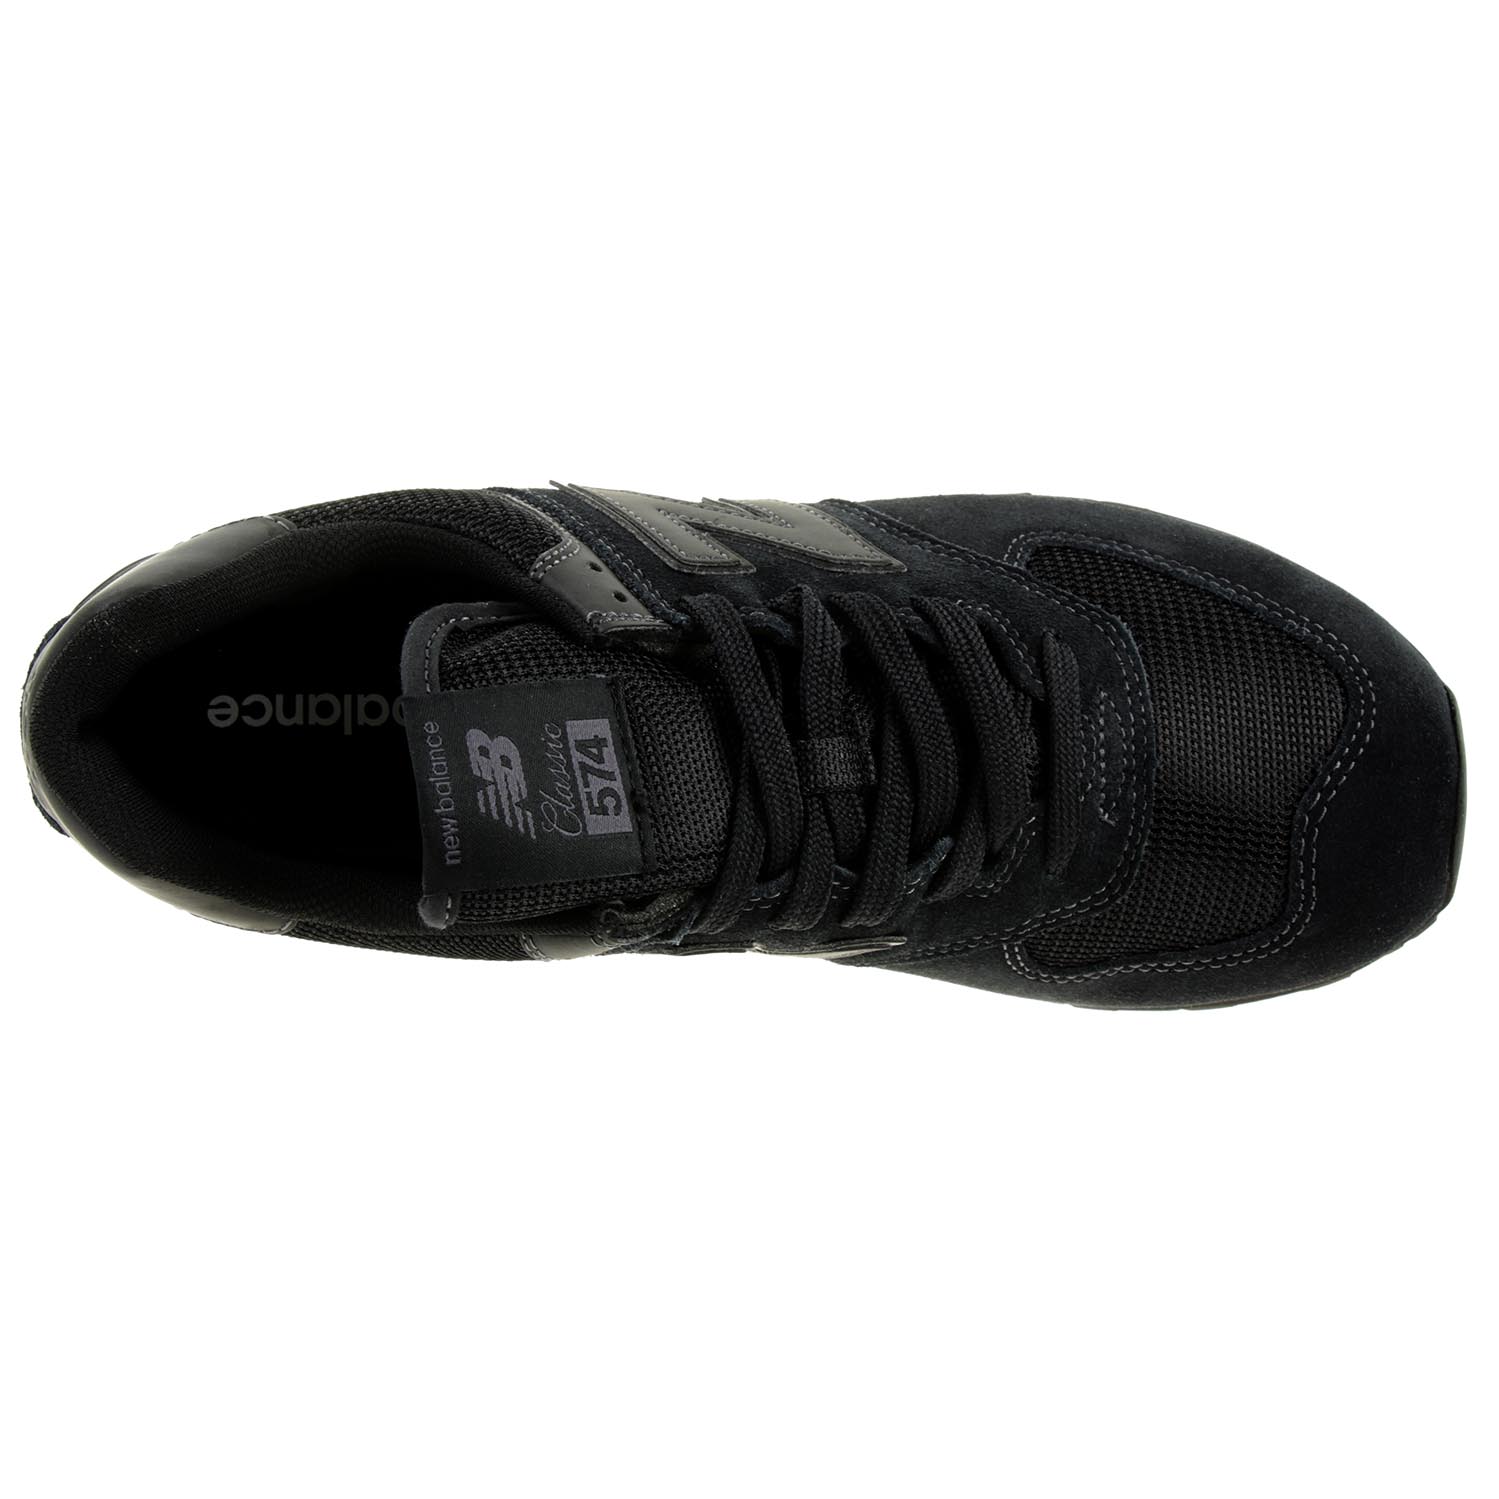 New Balance ML 574 ETE Classic Sneaker Herren Schuhe schwarz